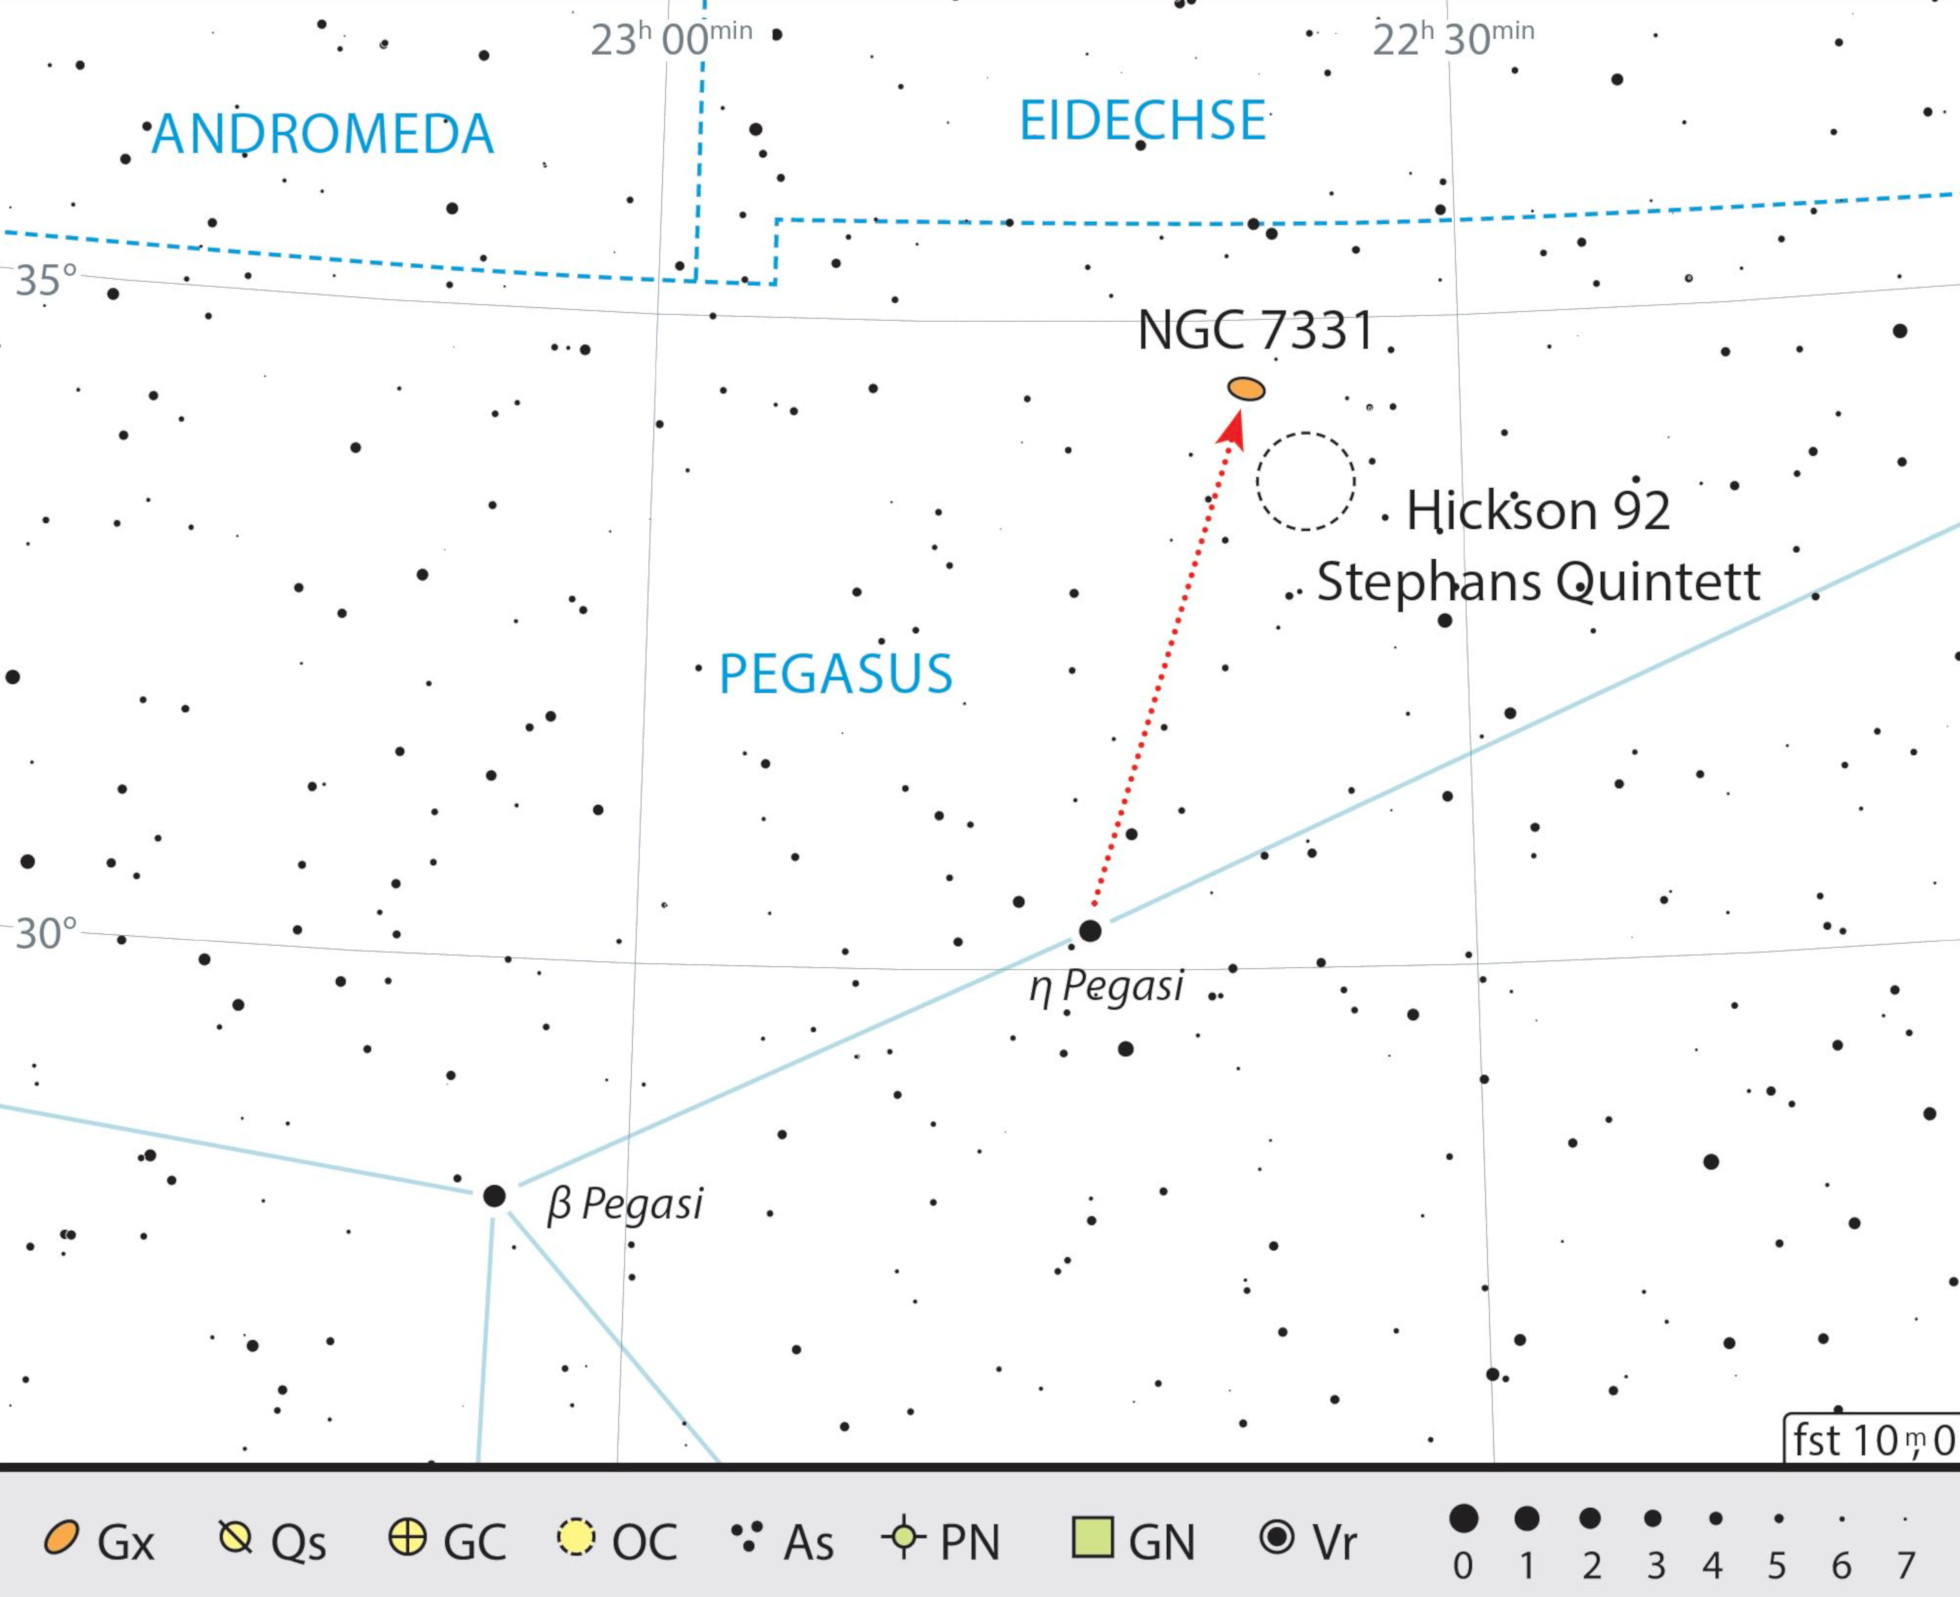 Mapa de procura para NGC 7331 e o grupo de galáxias a sudoeste, Hickson 92. J. Scholten 